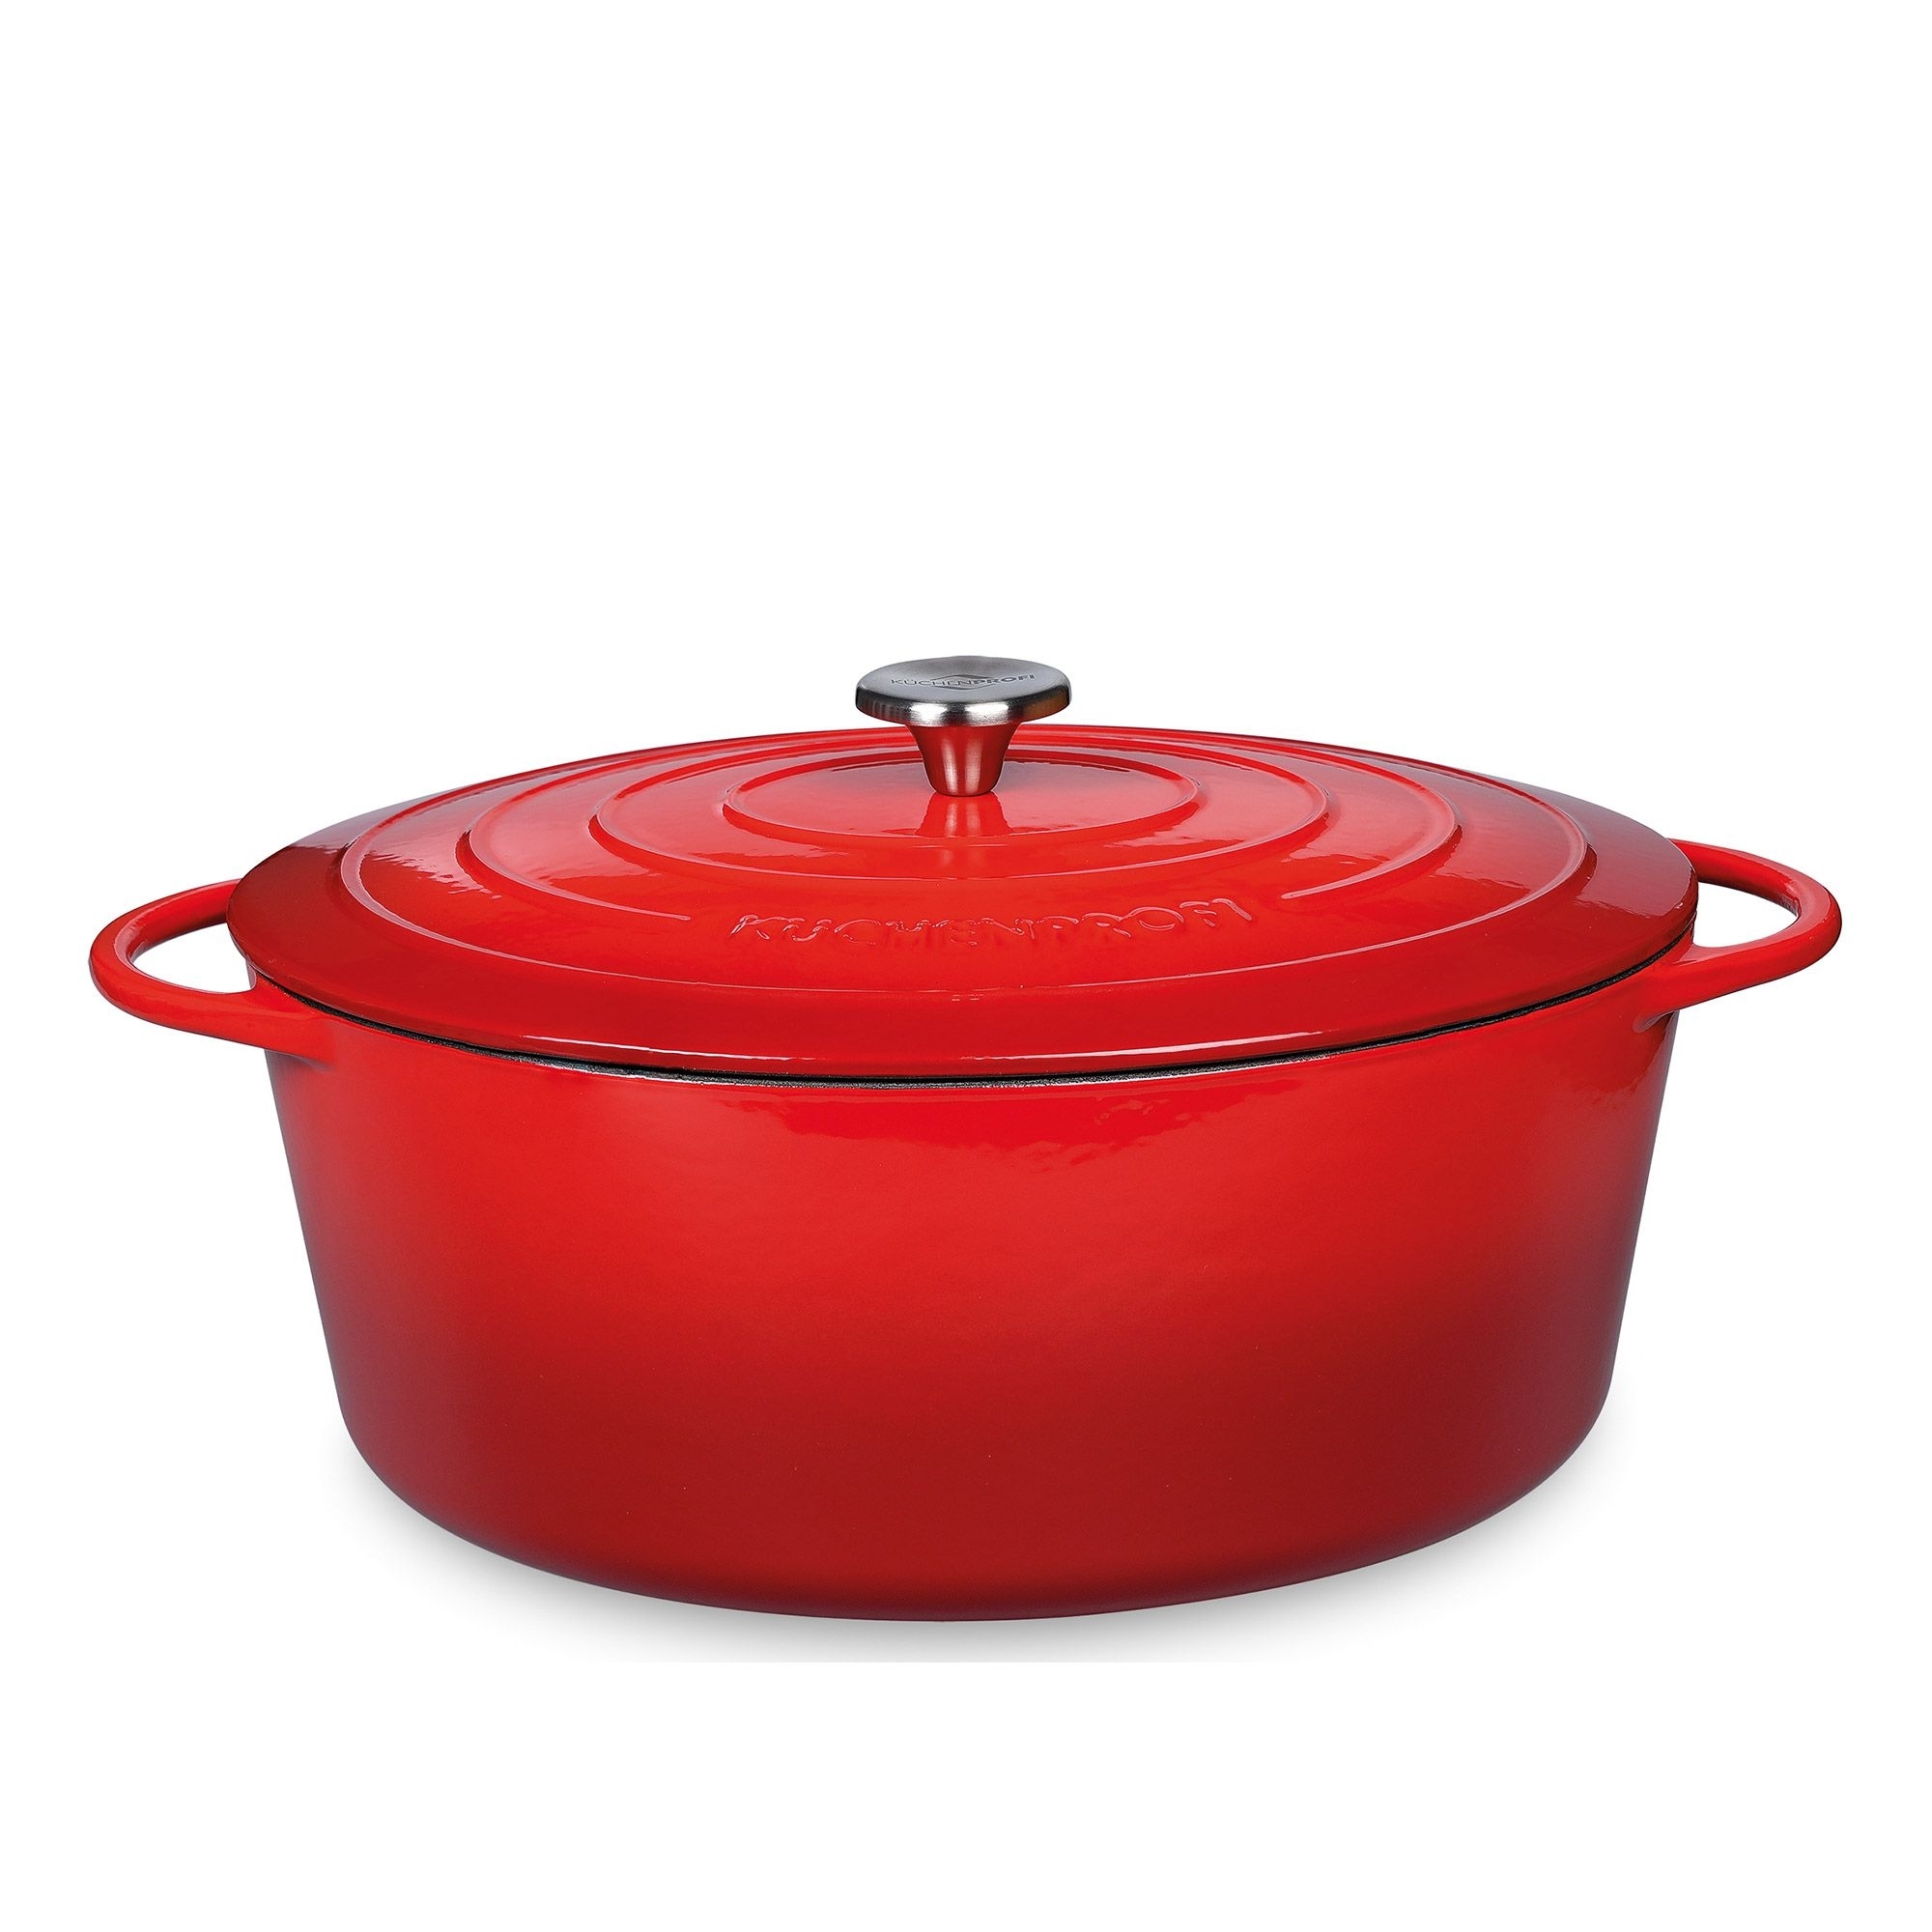 Küchenprofi - PROVENCE - ovaler Bratentopf - red - 40 cm